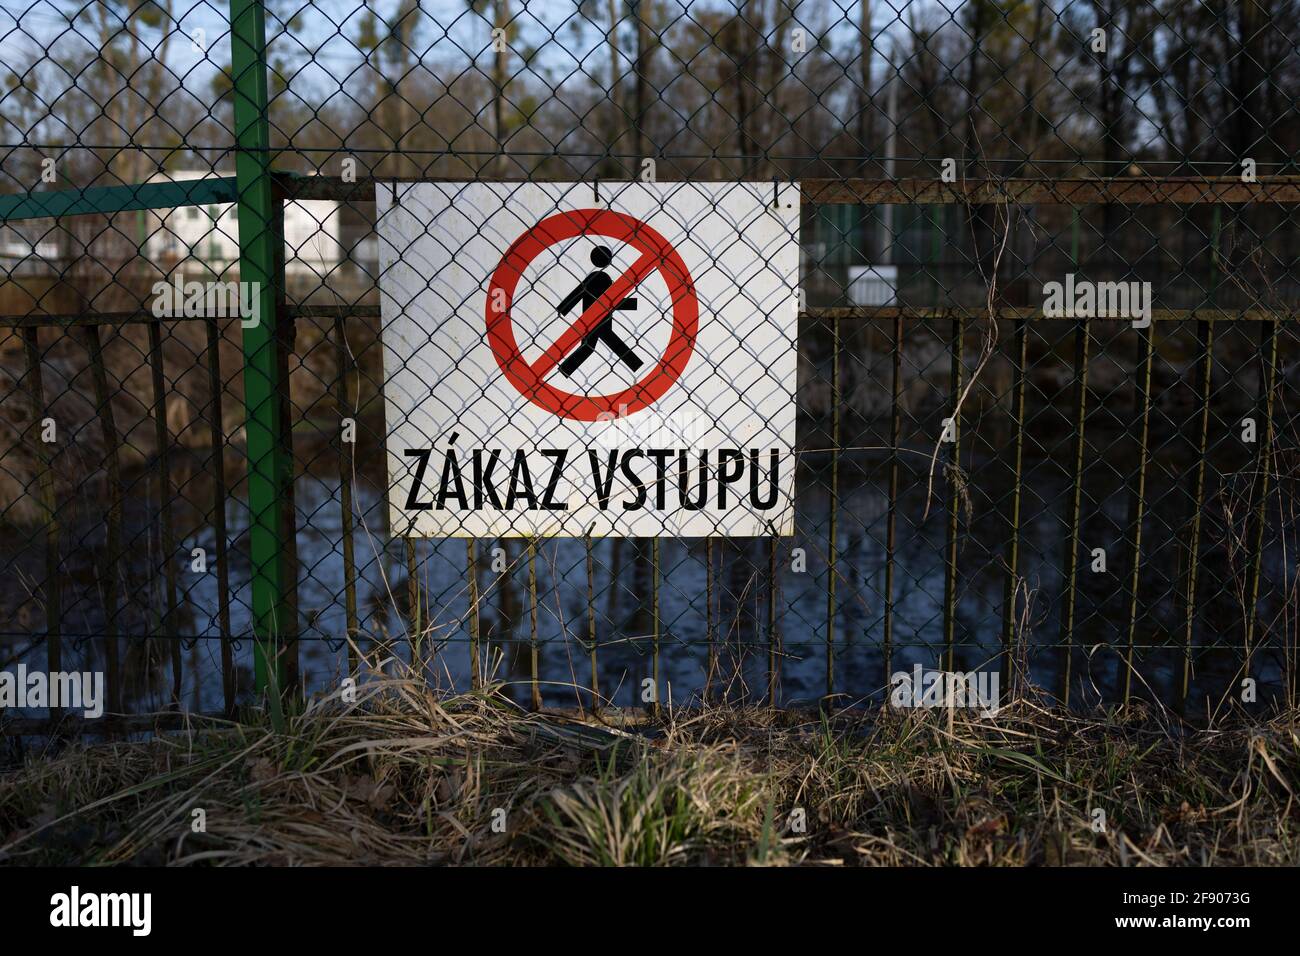 Zakaz vstuu (traduzione dal ceco: Nessun ingresso / nessuna entrata) - cartello, cartello e cartello sulla recinzione in rete metallica. Messa a fuoco superficiale. Foto Stock